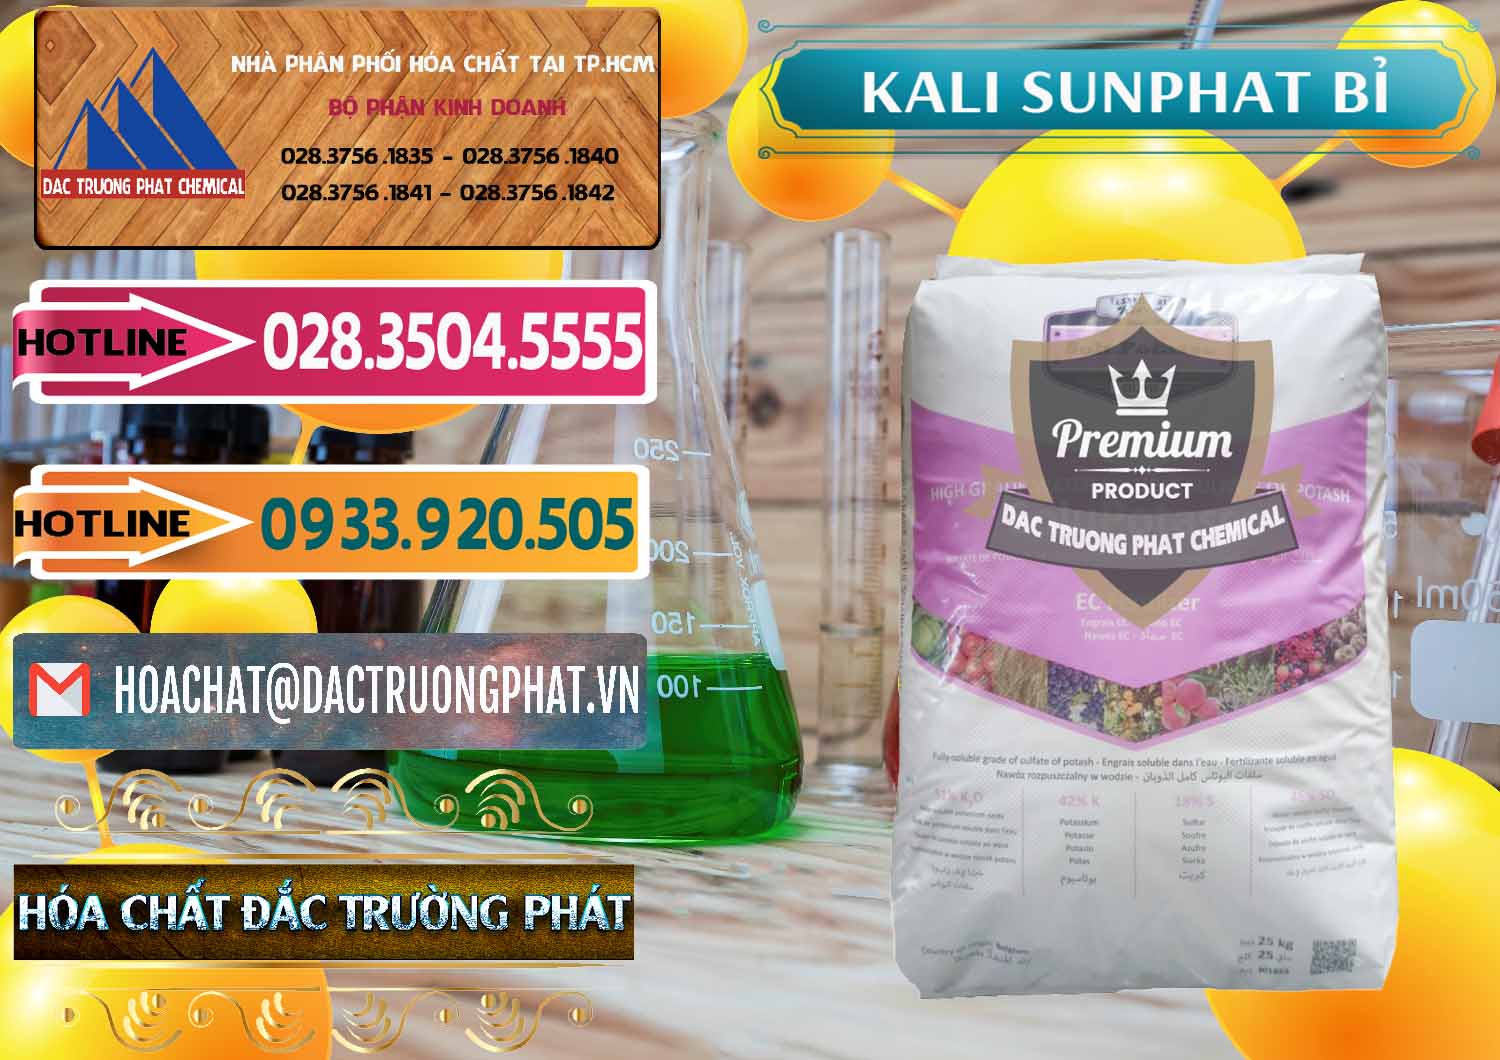 Công ty chuyên cung ứng & bán Kali Sunphat – K2SO4 Bỉ Belgium - 0406 - Công ty bán _ cung cấp hóa chất tại TP.HCM - dactruongphat.vn